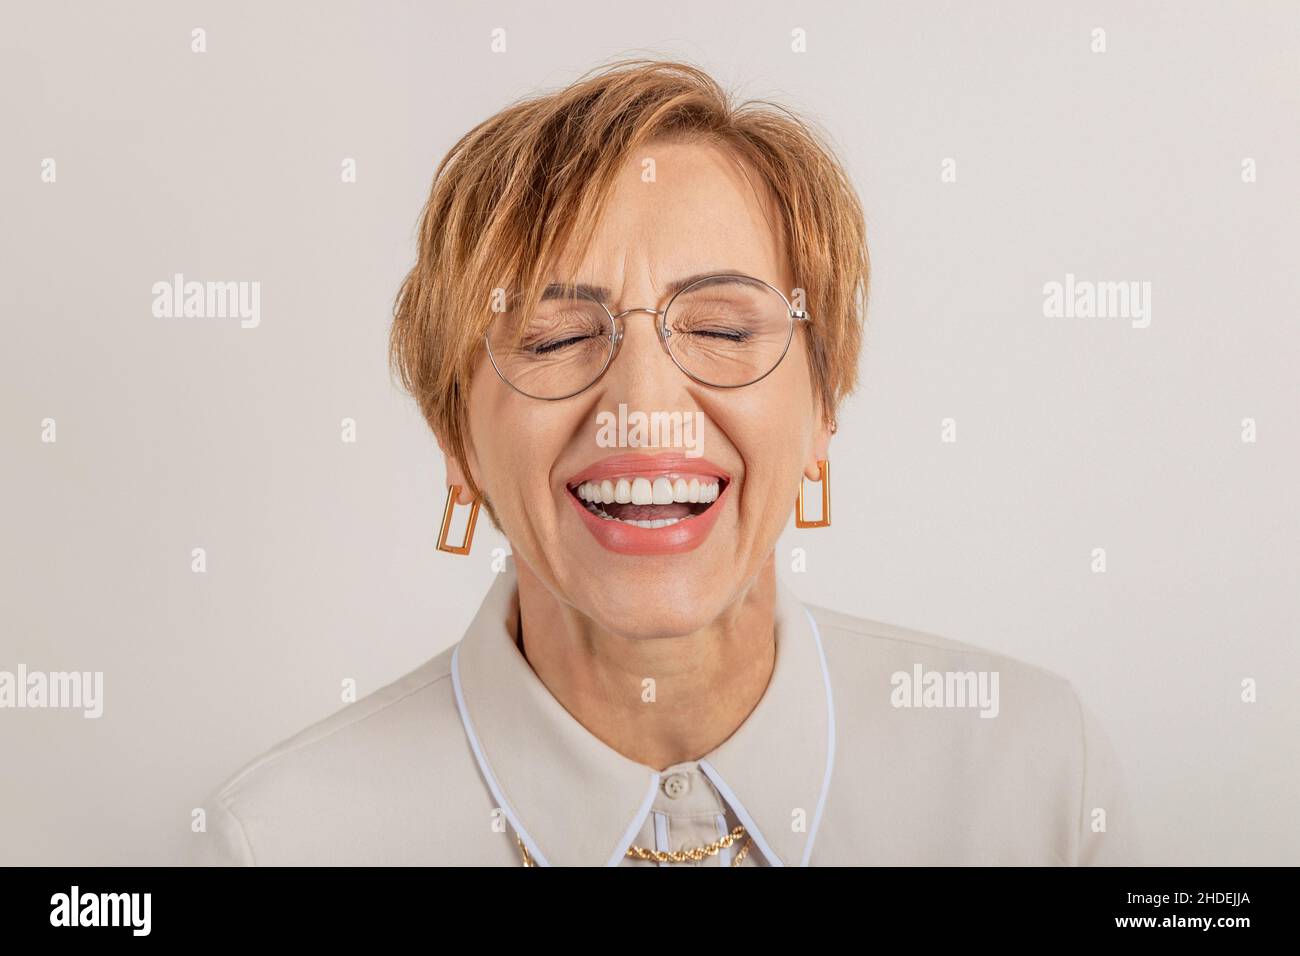 La jeune femme d'âge moyen sourit largement avec de belles dents en bonne santé. Banque D'Images